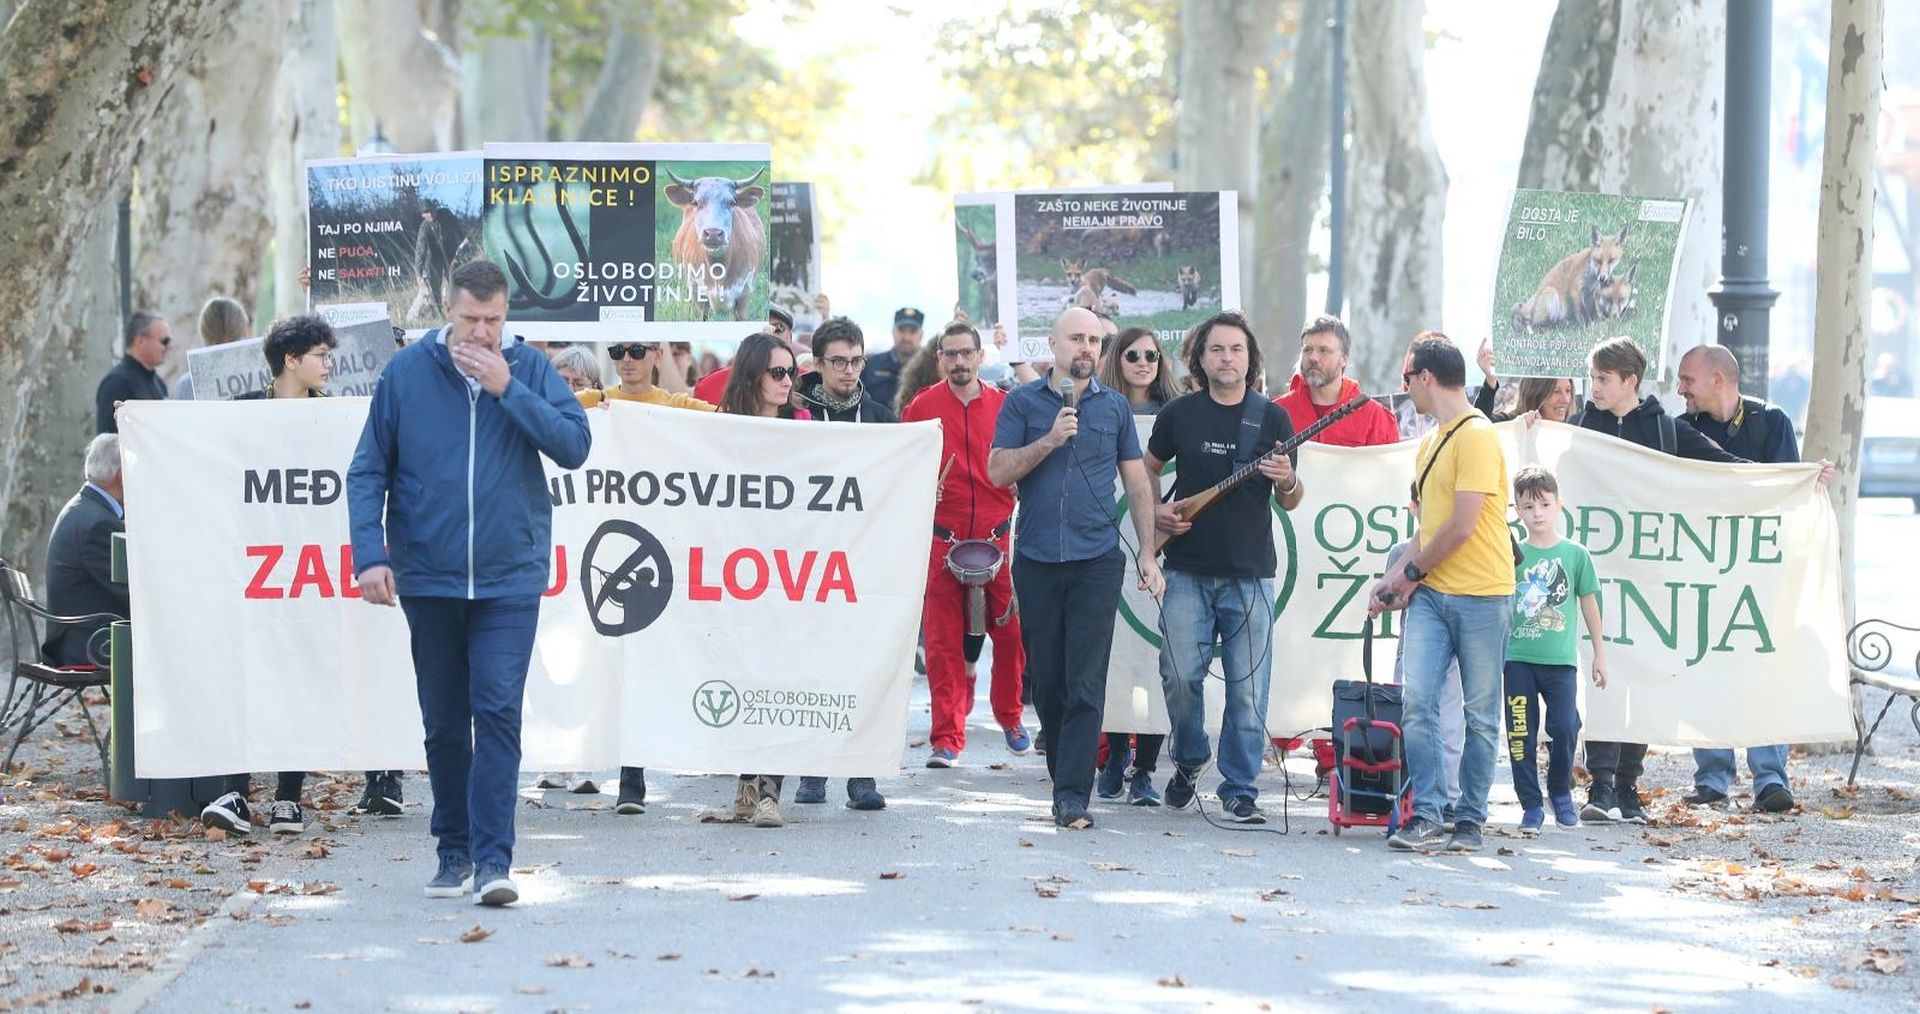 26.10.2019., Zagreb - 2. medjunarodni prosvjed za zabranu lova. Photo: Sanjin Strukic/PIXSELL